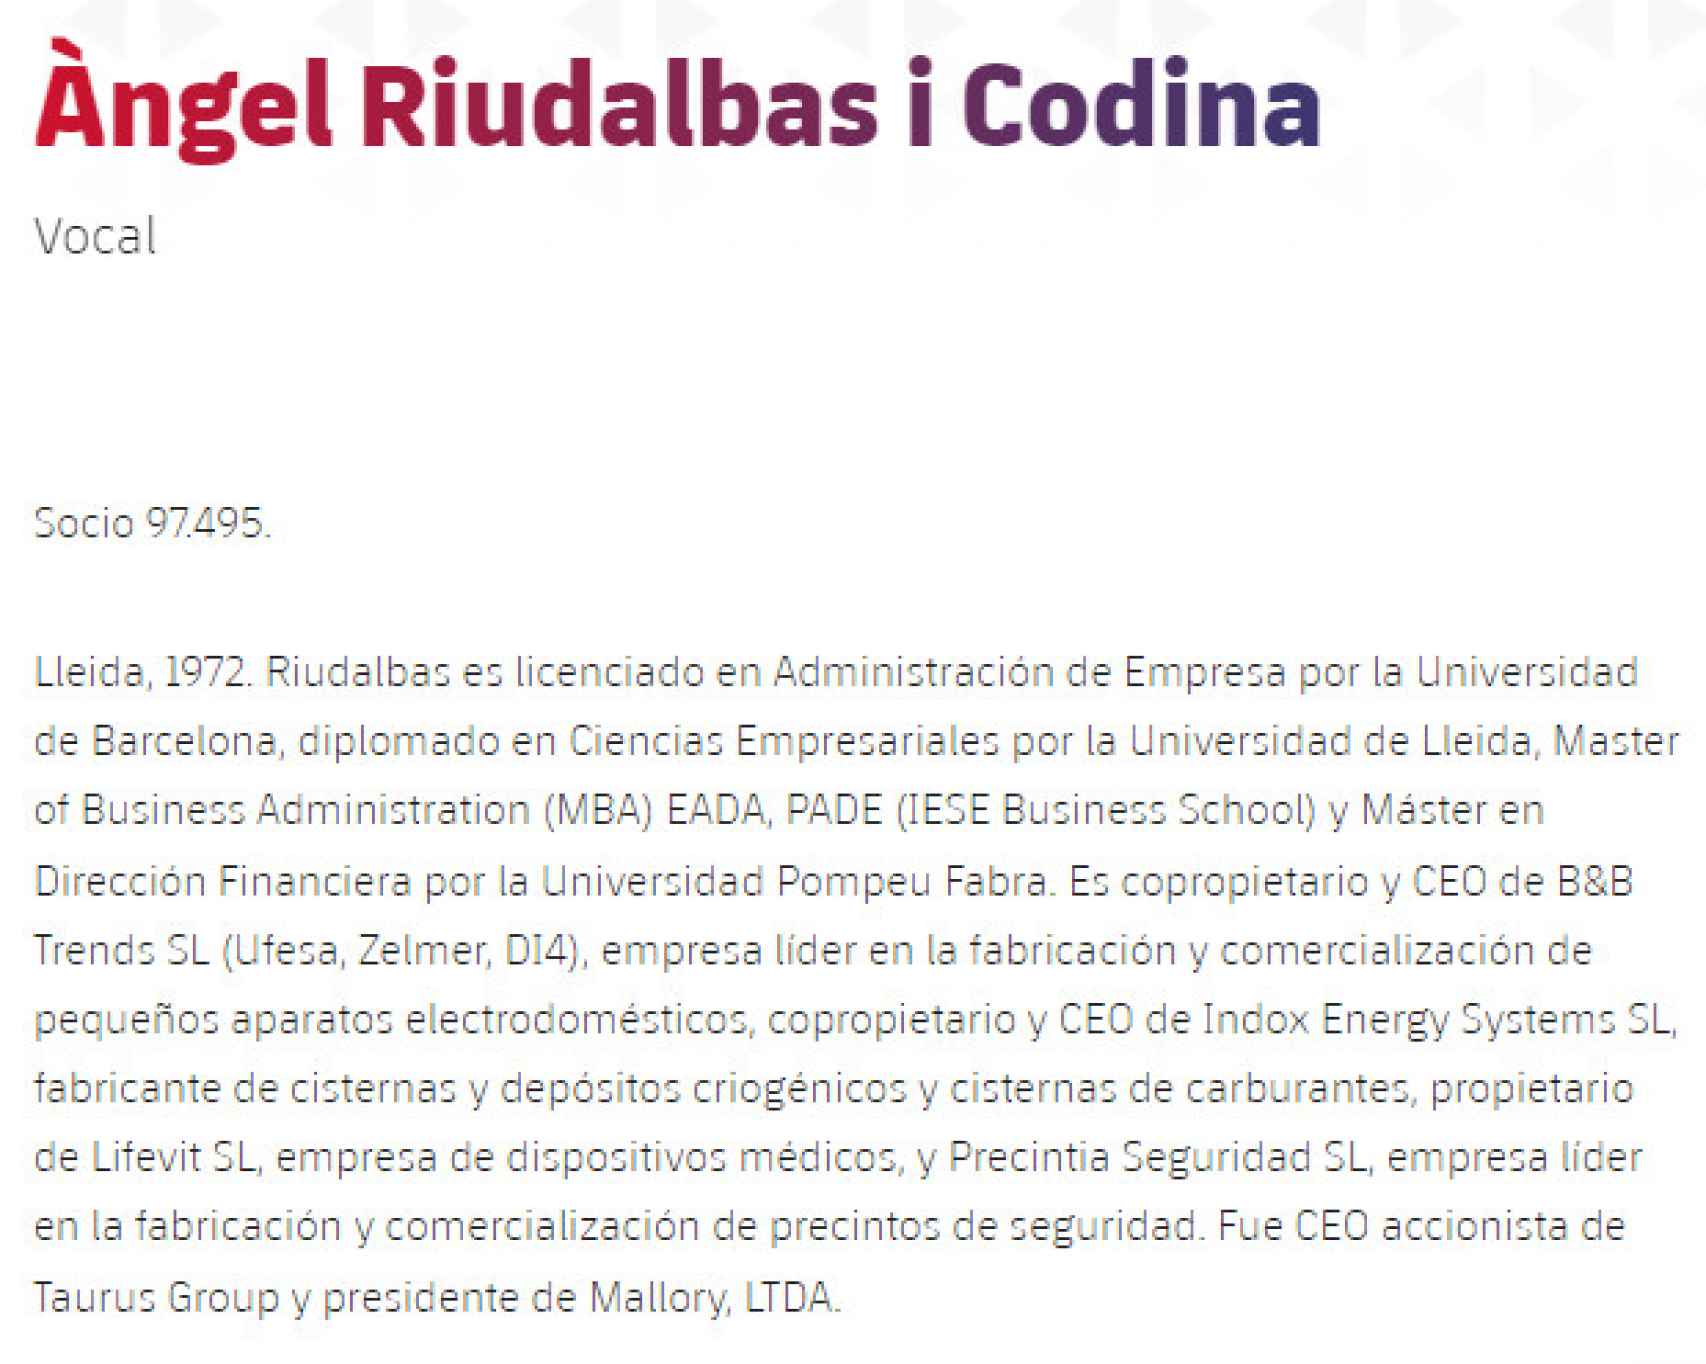 La descripción de Àngel Riudalbas Codina en la web del Barça